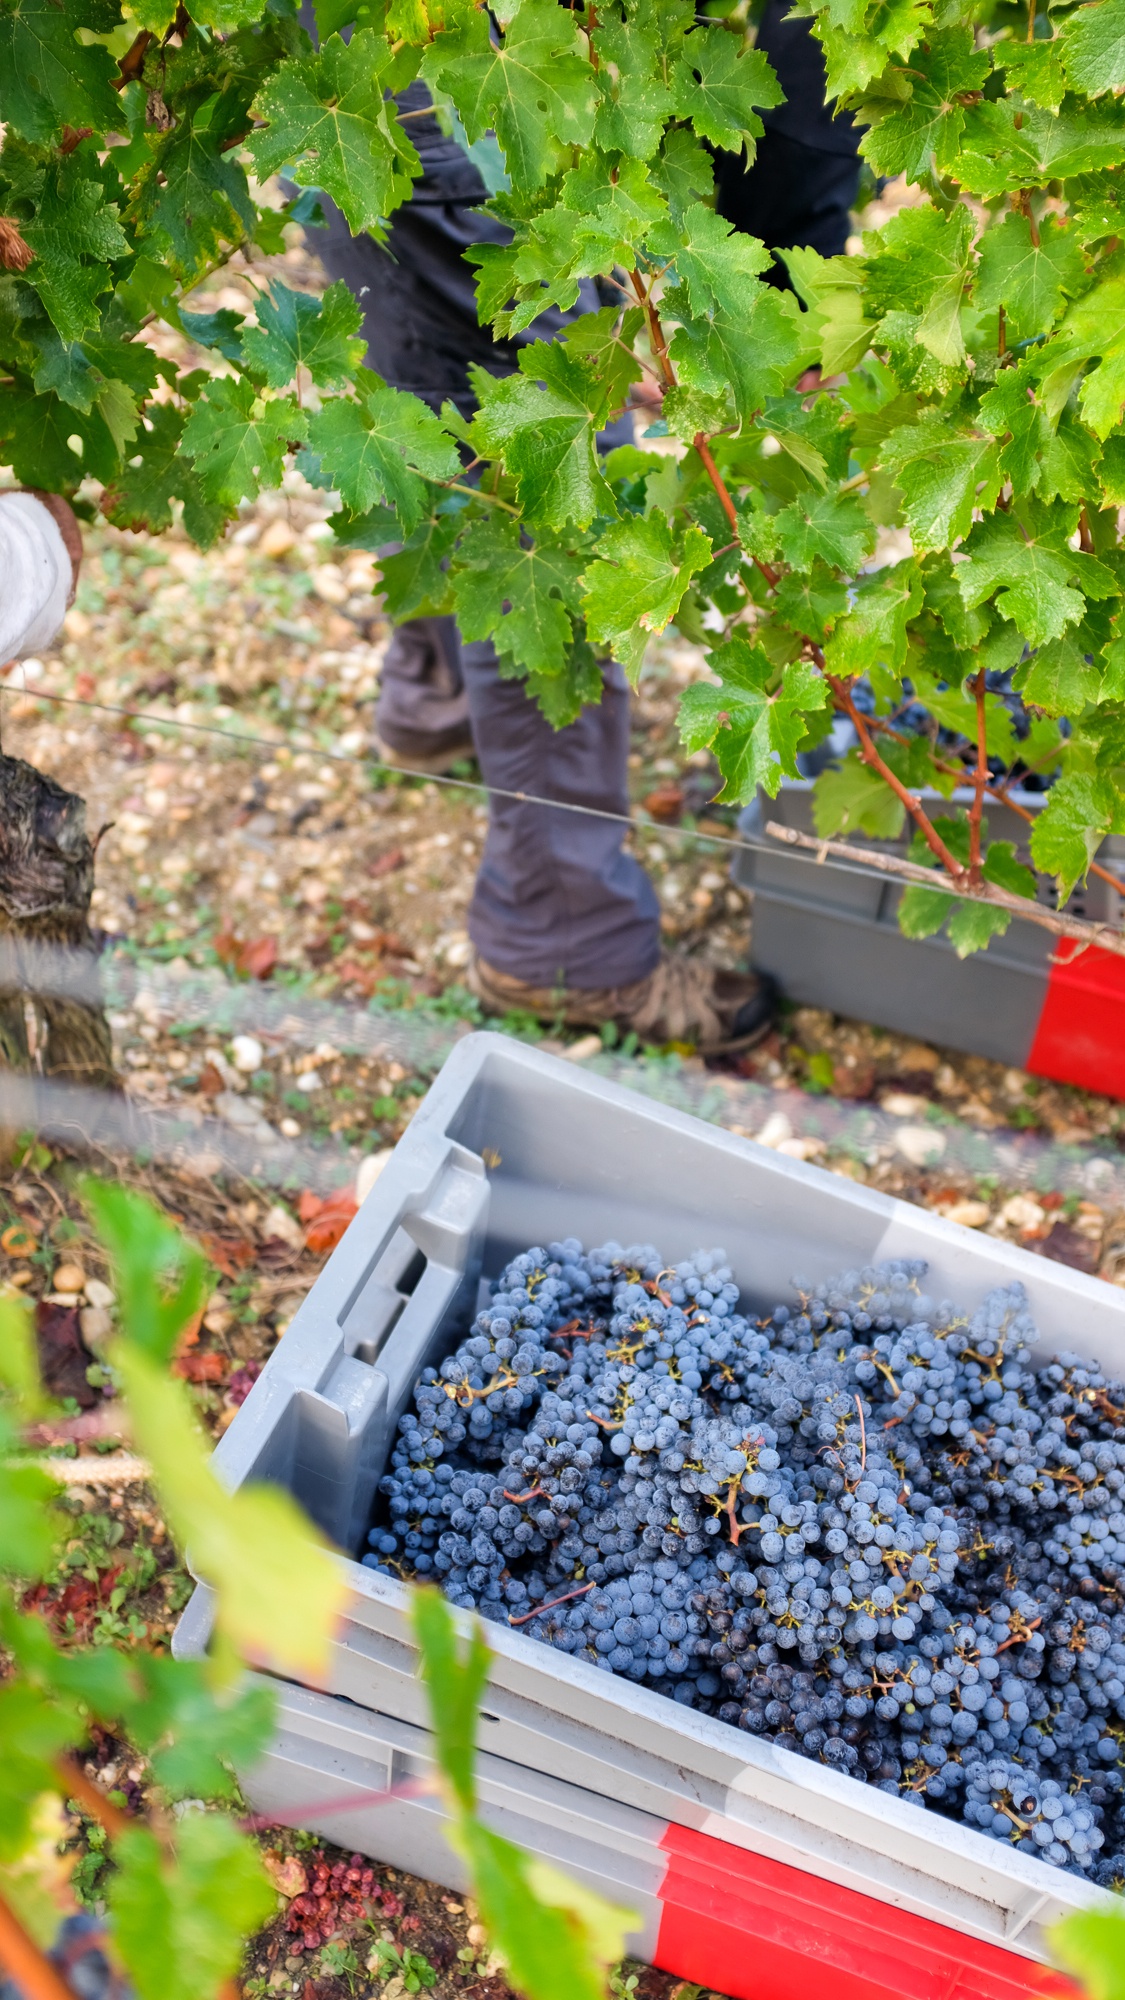 La viticulture, un rempart contre l’exclusion? - Chateau Pedesclaux